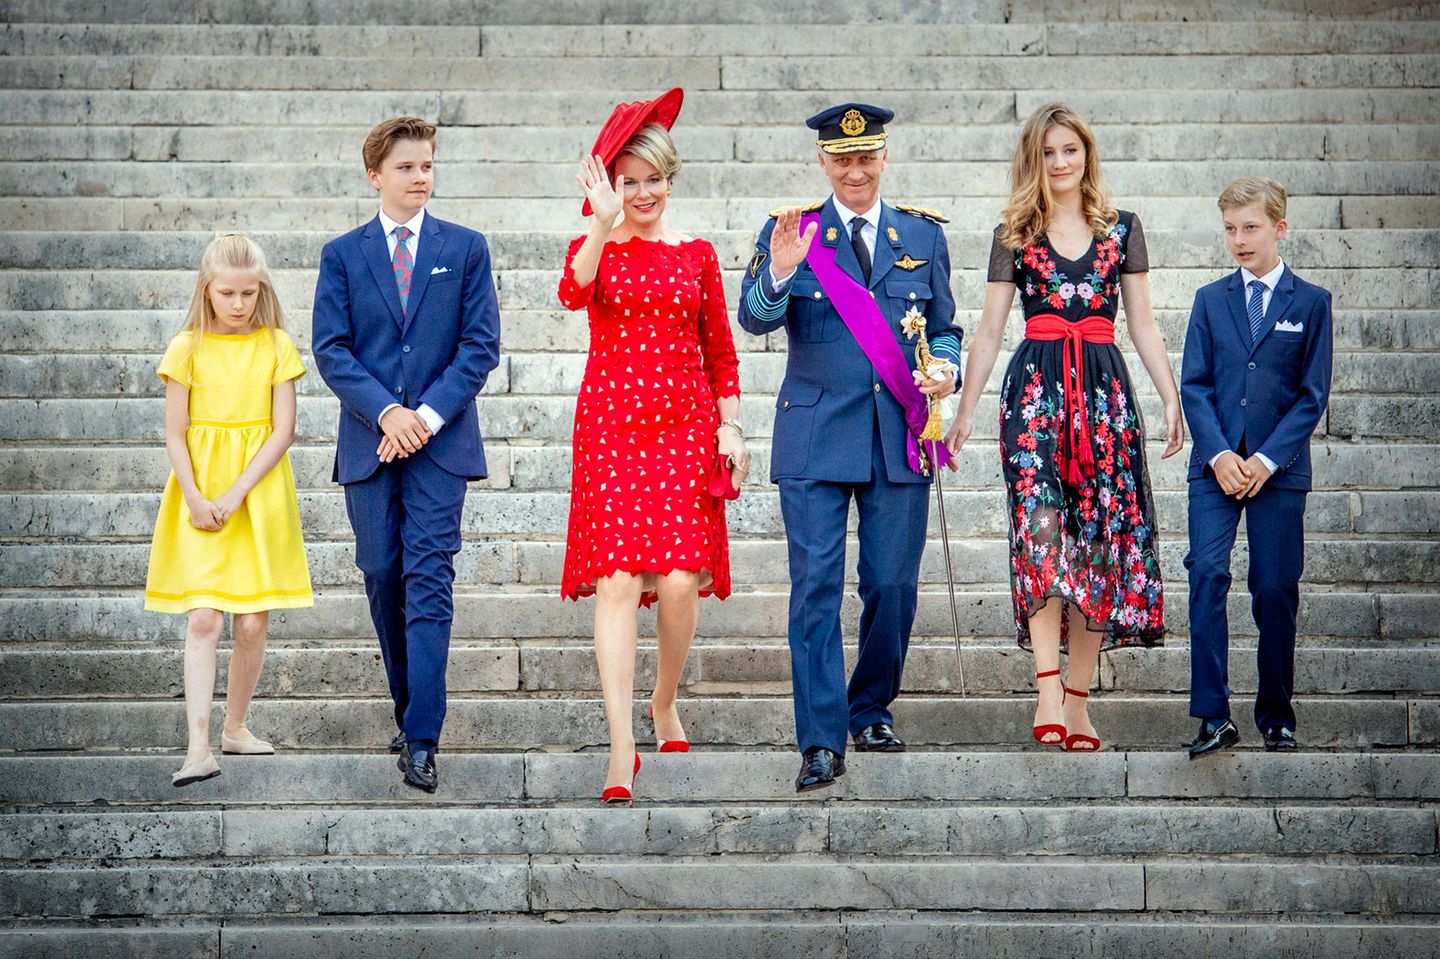 Die belgische Königsfamilie: (v.l) Prinzessin Eléonore, Prinz Gabriel, Königin Mathilde, König Philippe, Prinzessin Elisabeth und Prinz Emmanuel 